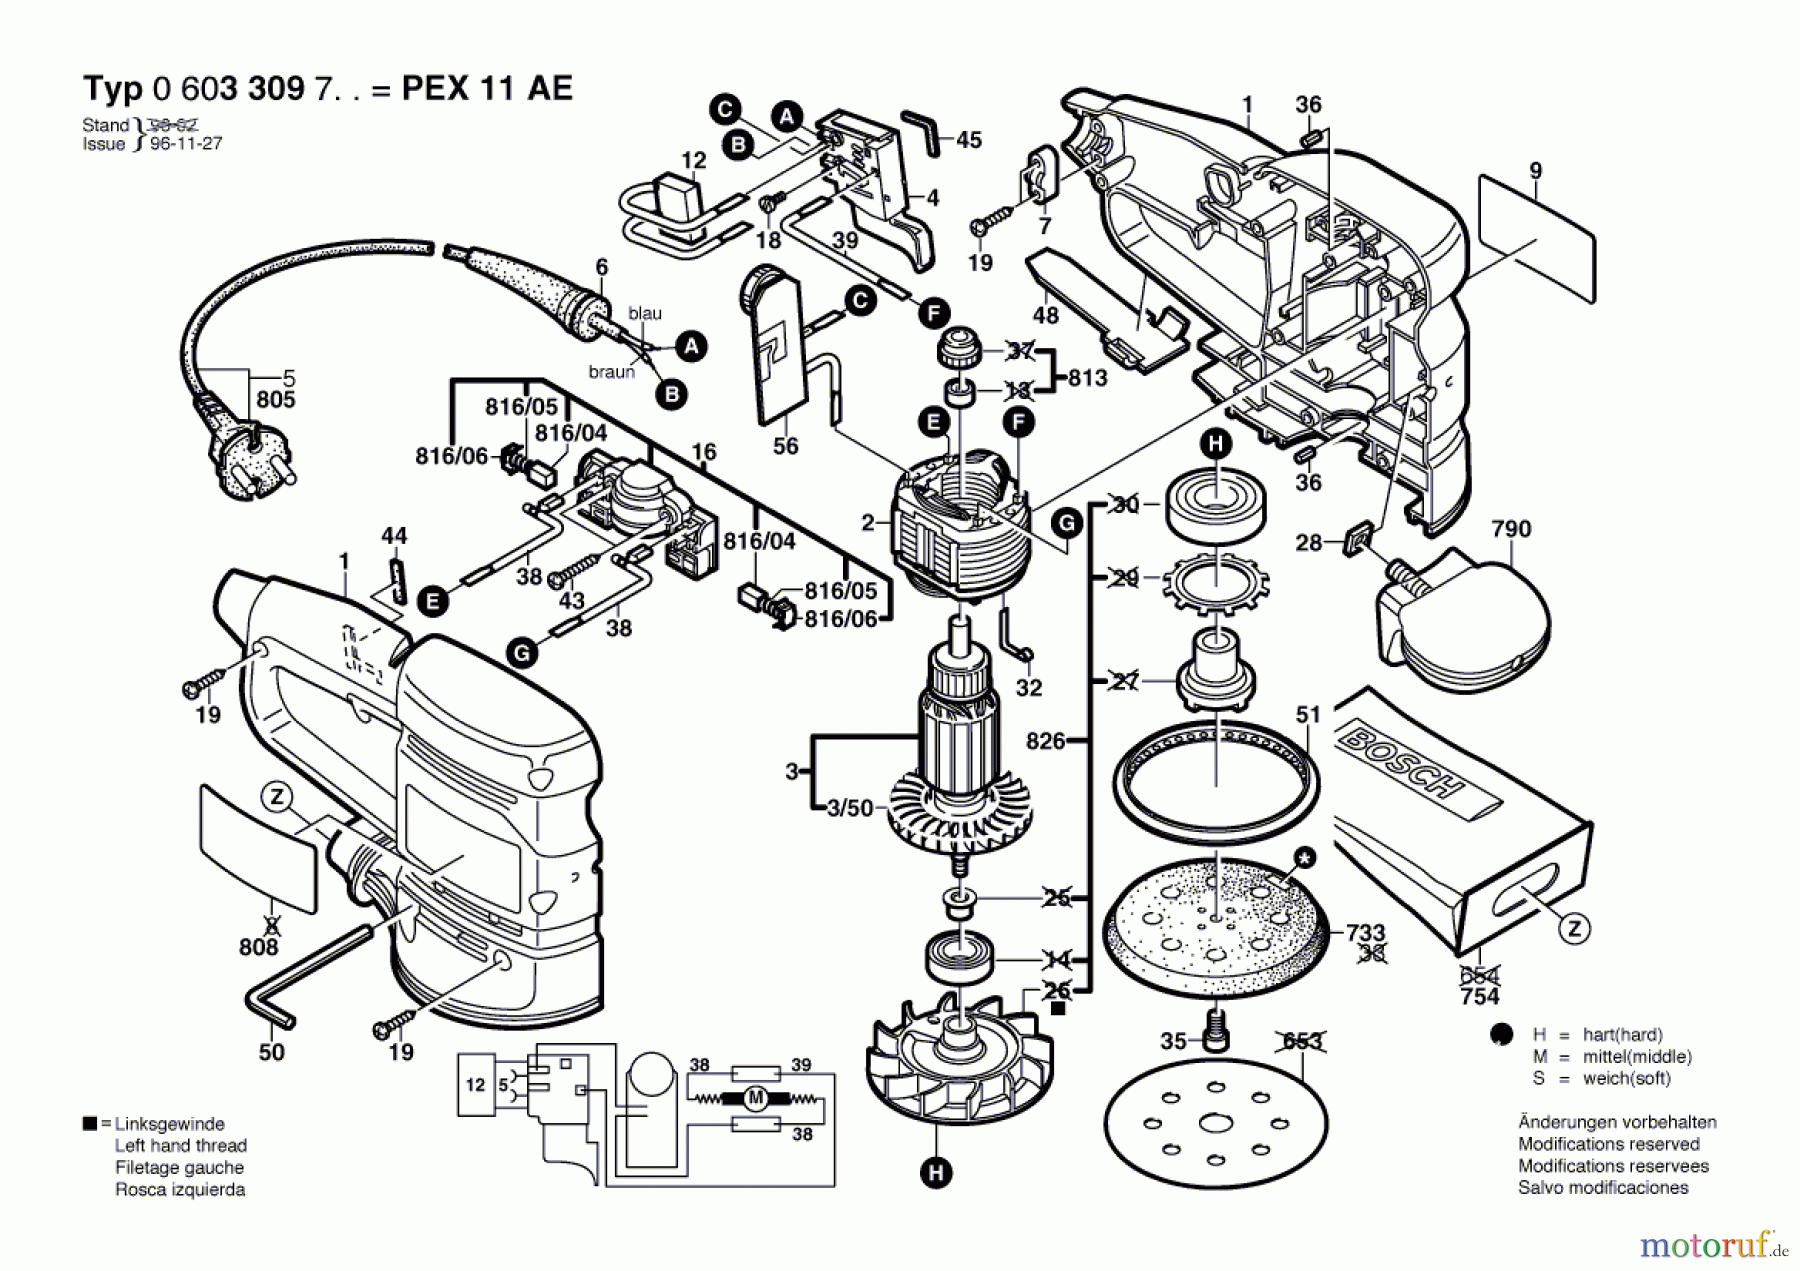  Bosch Werkzeug Exzenterschleifer PEX 11 AE Seite 1